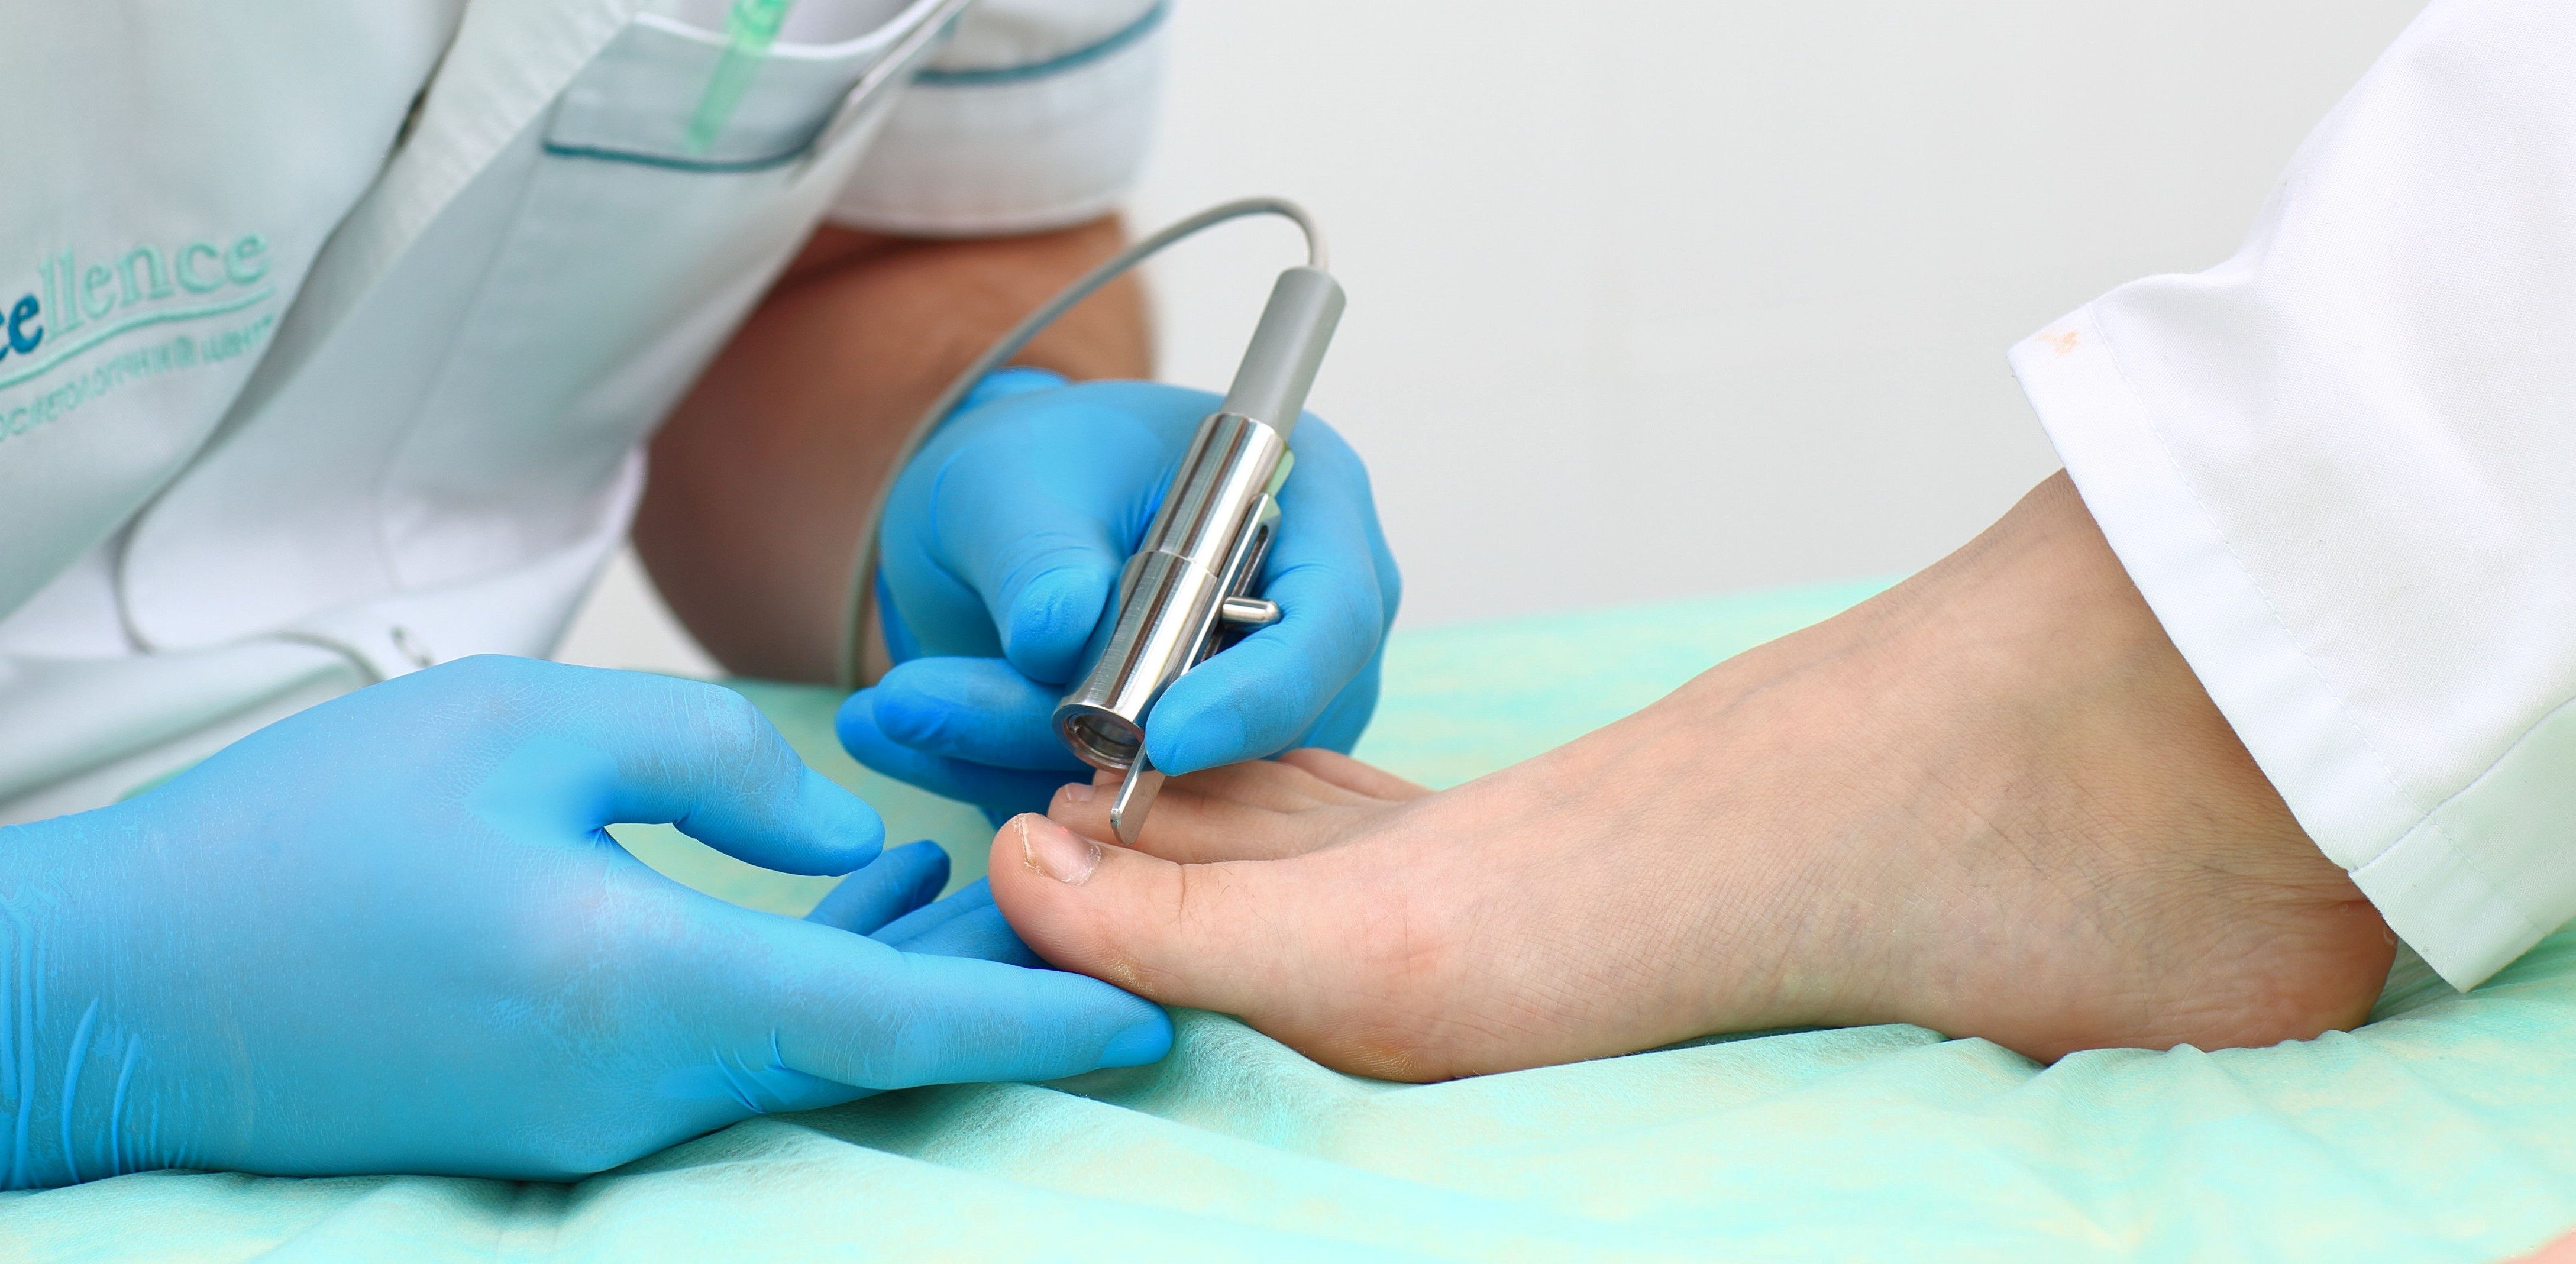 Лечение грибка ногтей (онихомикоз) лазером